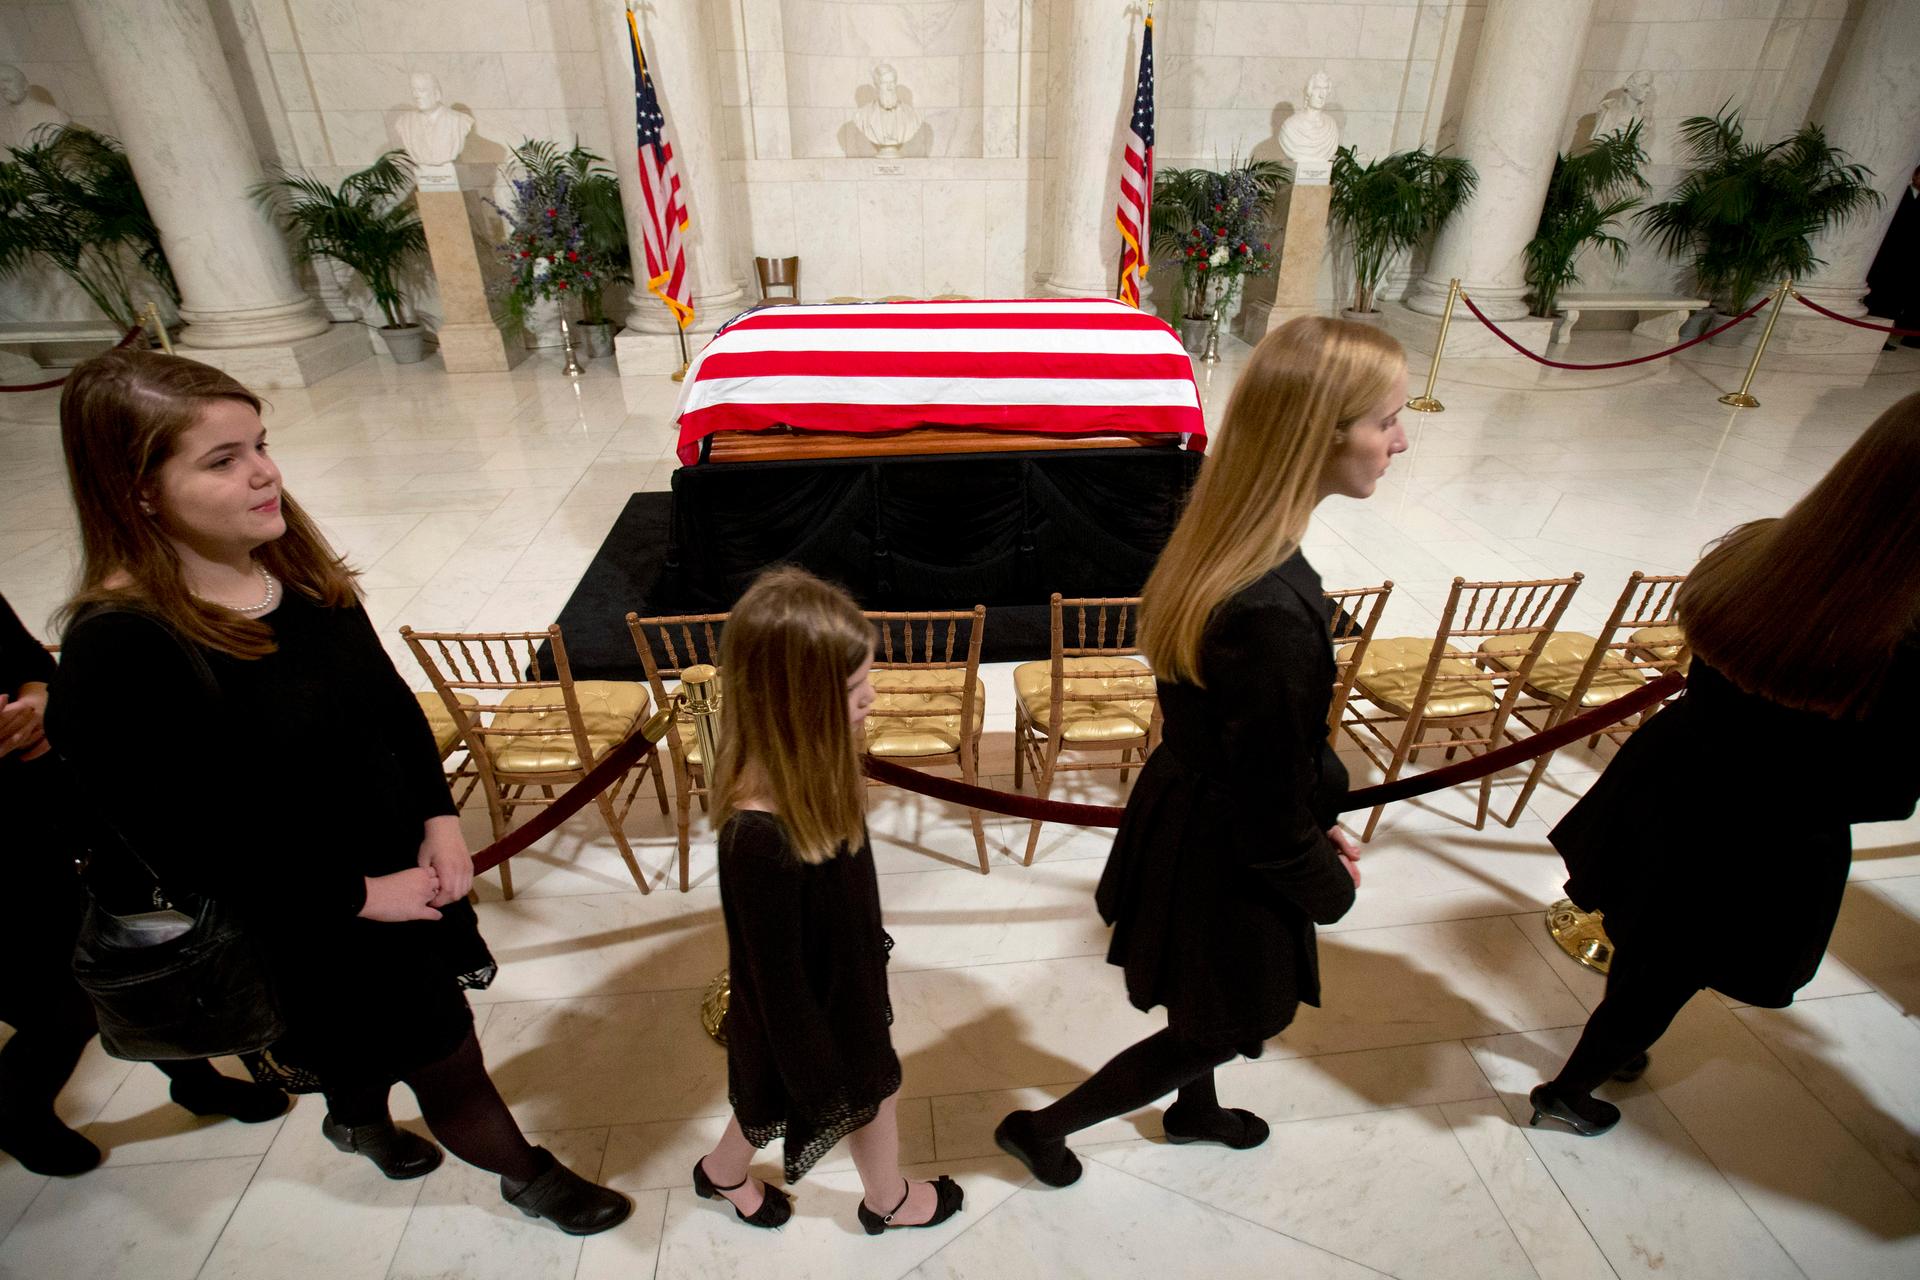 Scalia's casket